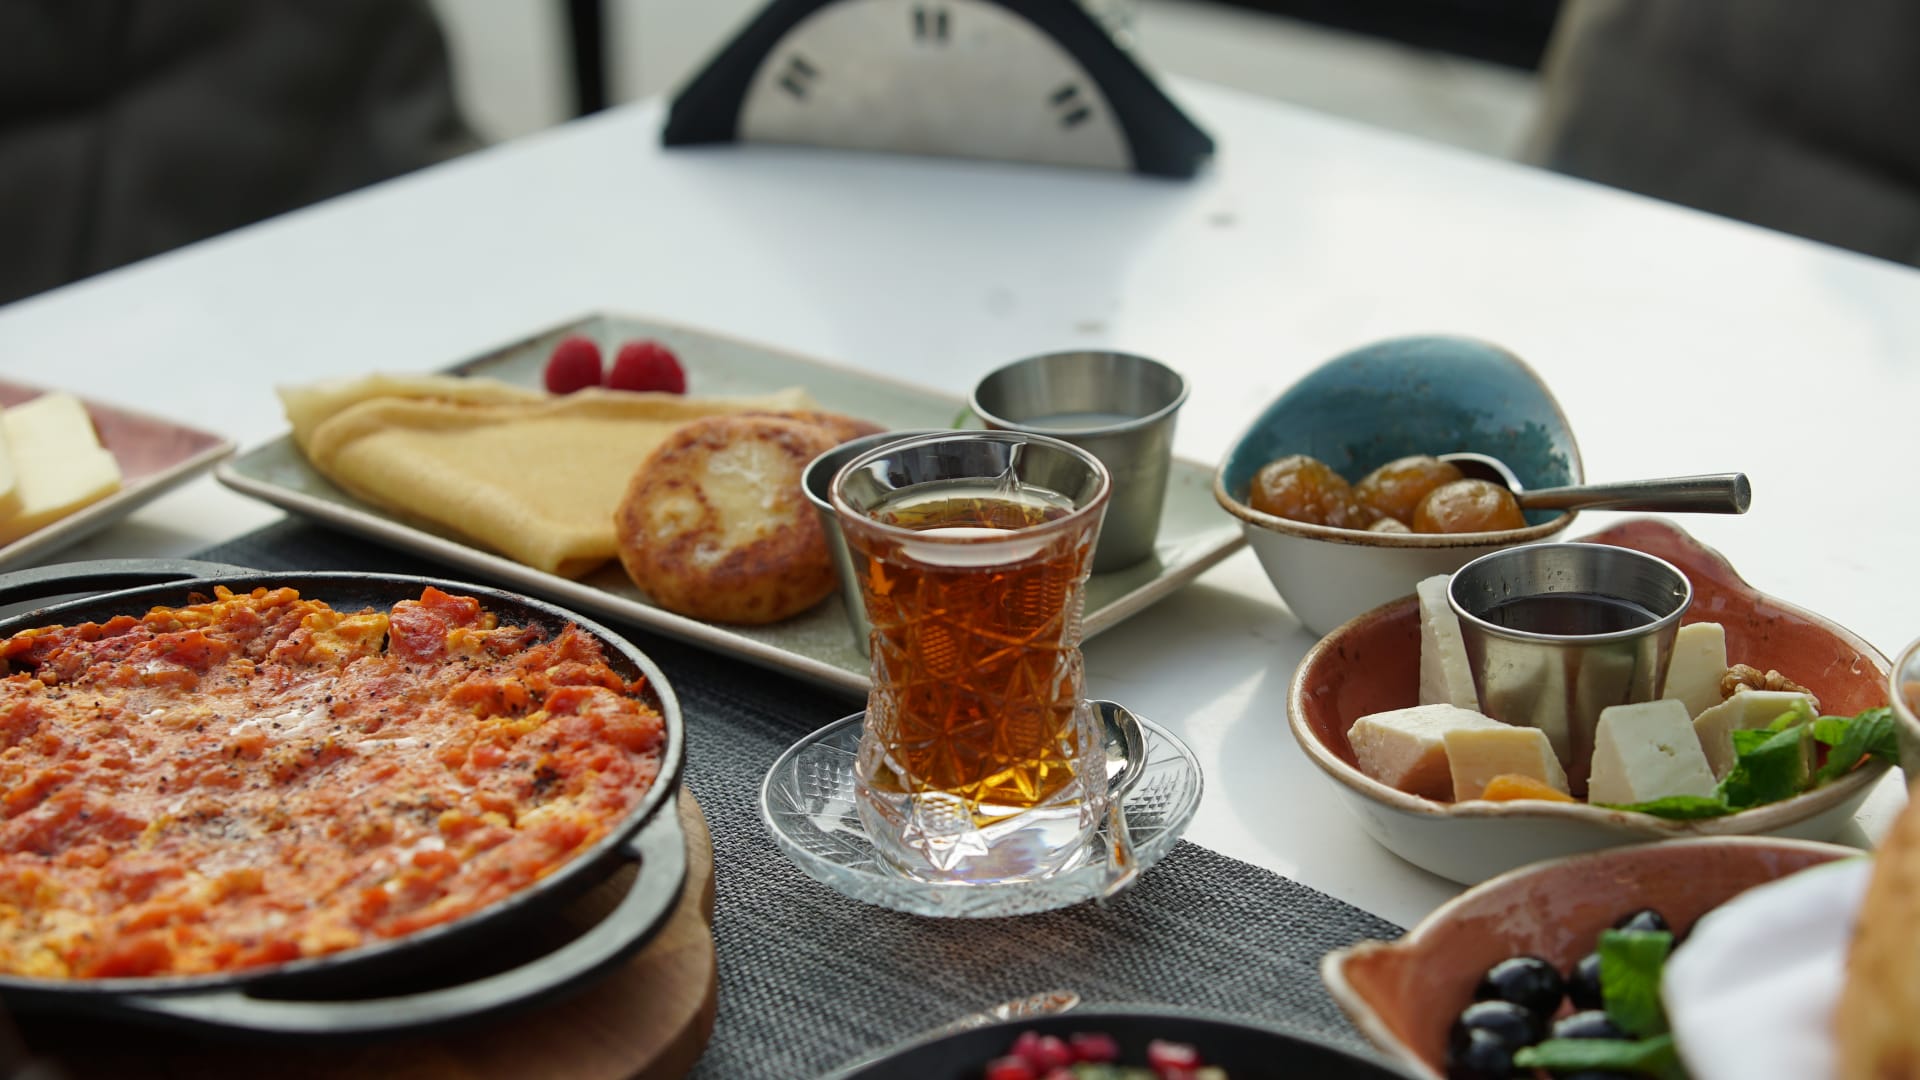 تتكون من أكثر من 10 أطباق.. إليك وجبة إفطار على الطريقة الأذربيجانية